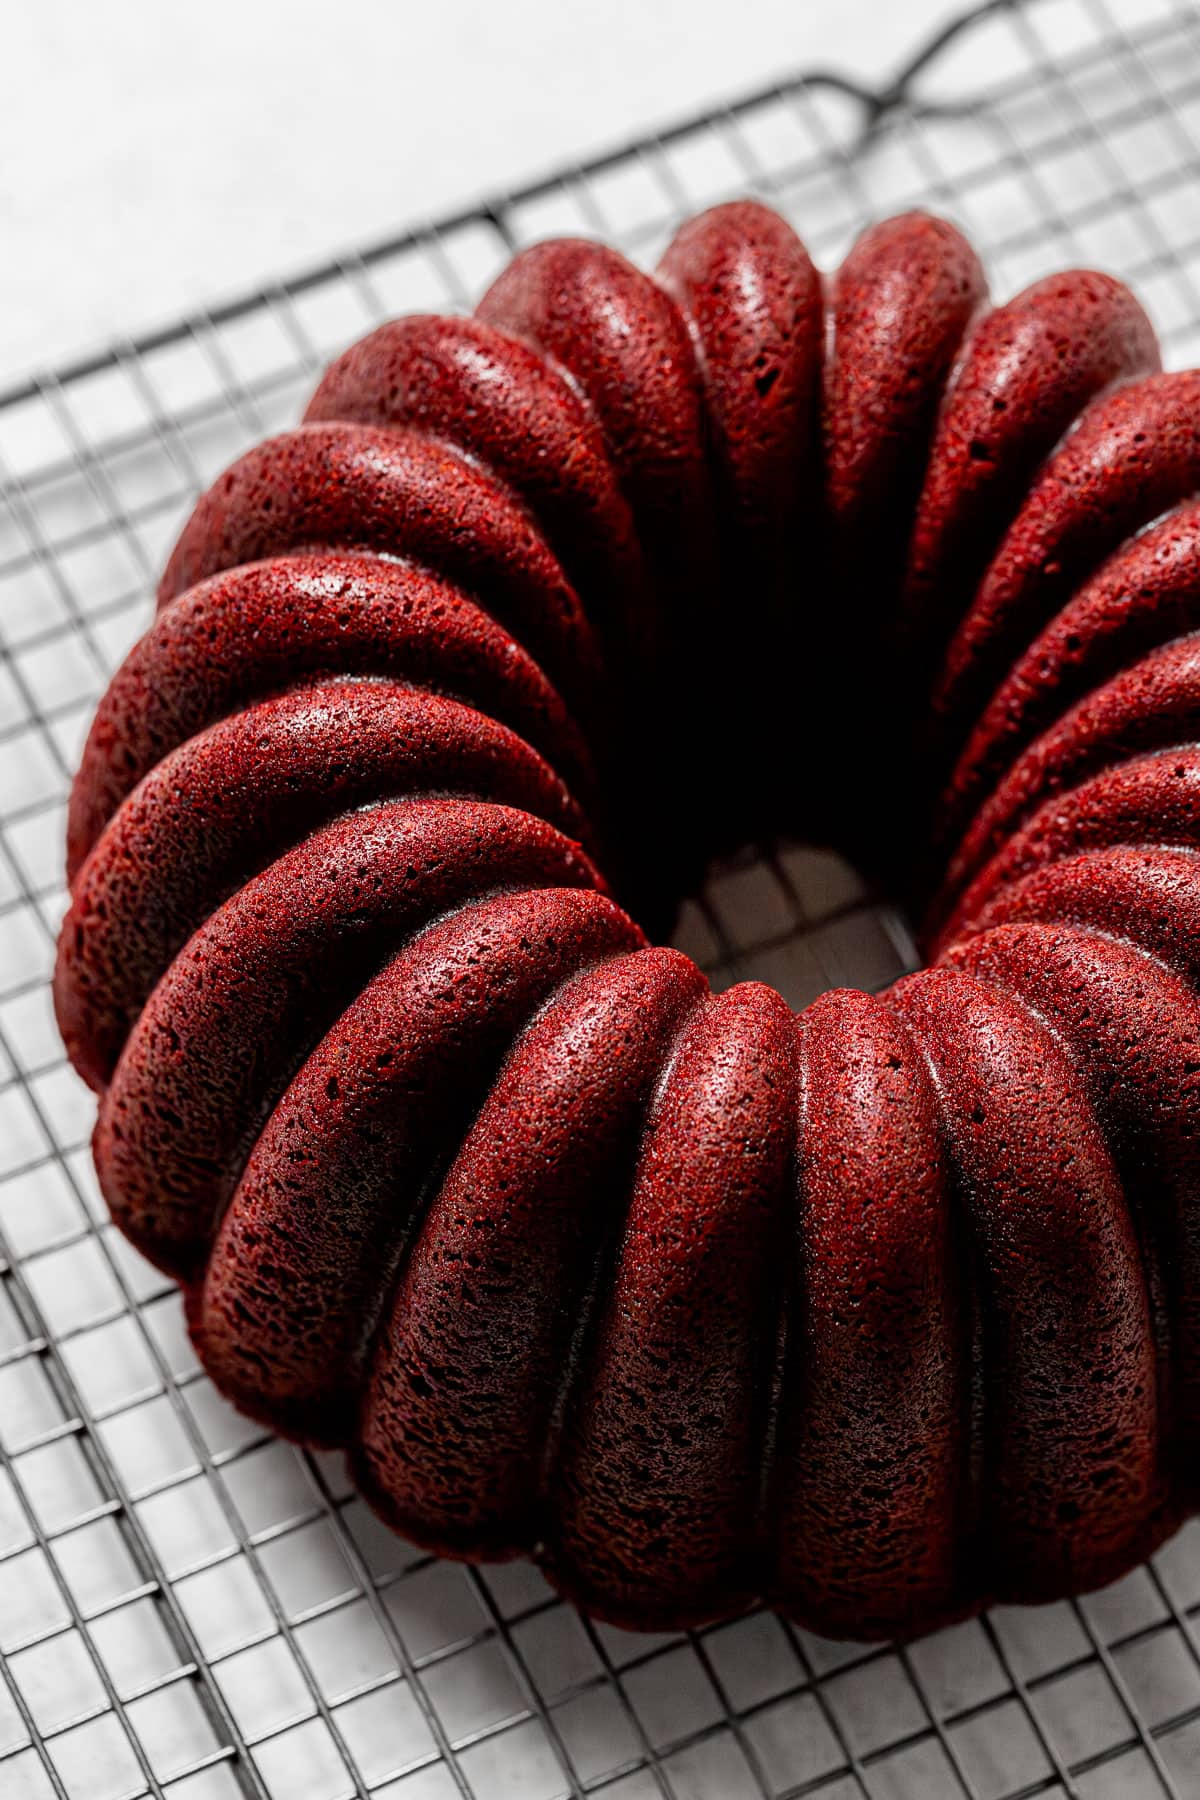 baked red velvet bundt cake on wire rack.